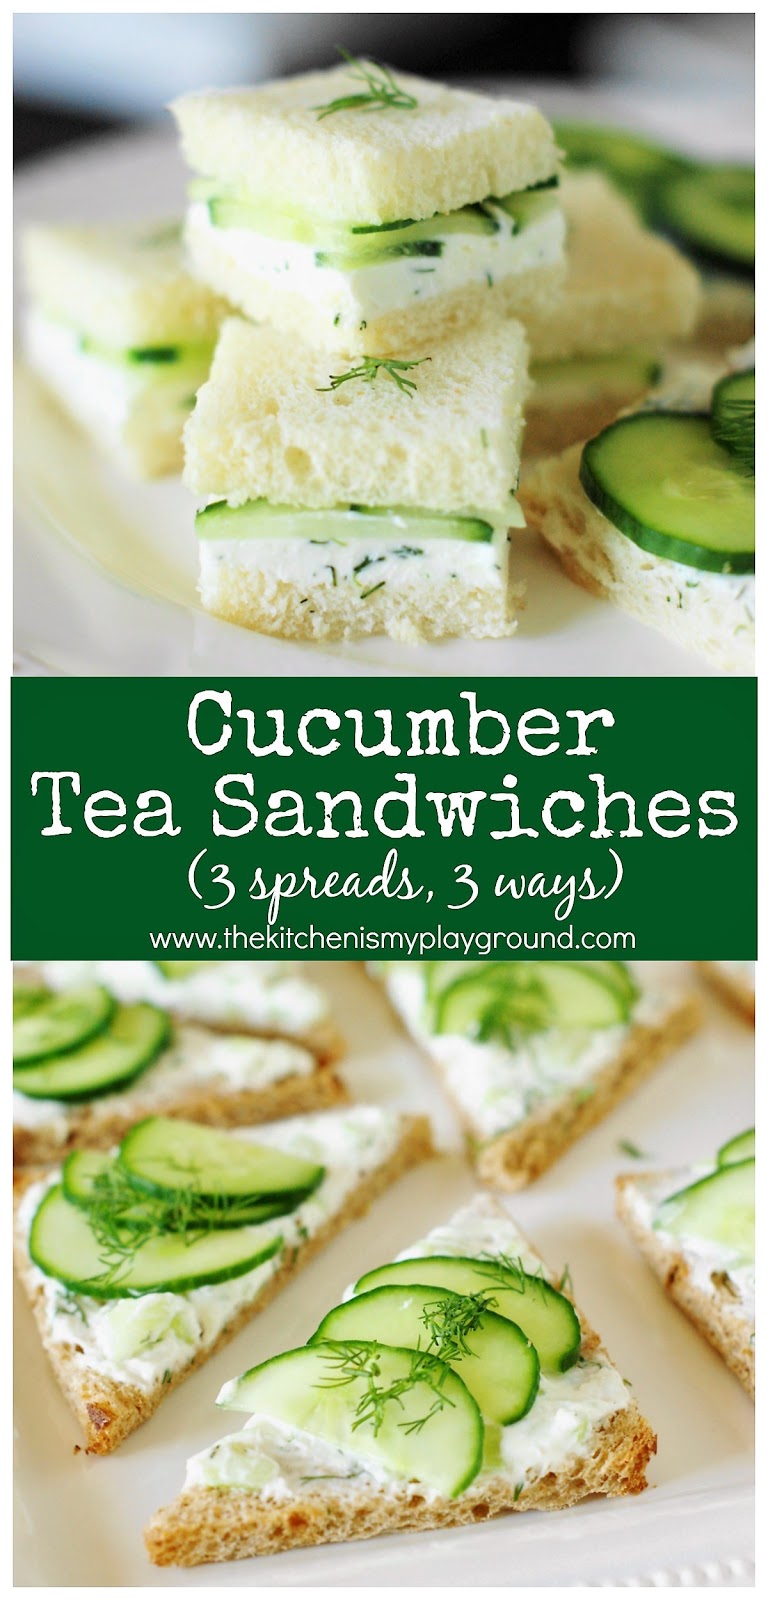 Cucumber Tea Sandwiches ~ 3 Spreads & 3 Ways | The Kitchen is My Playground